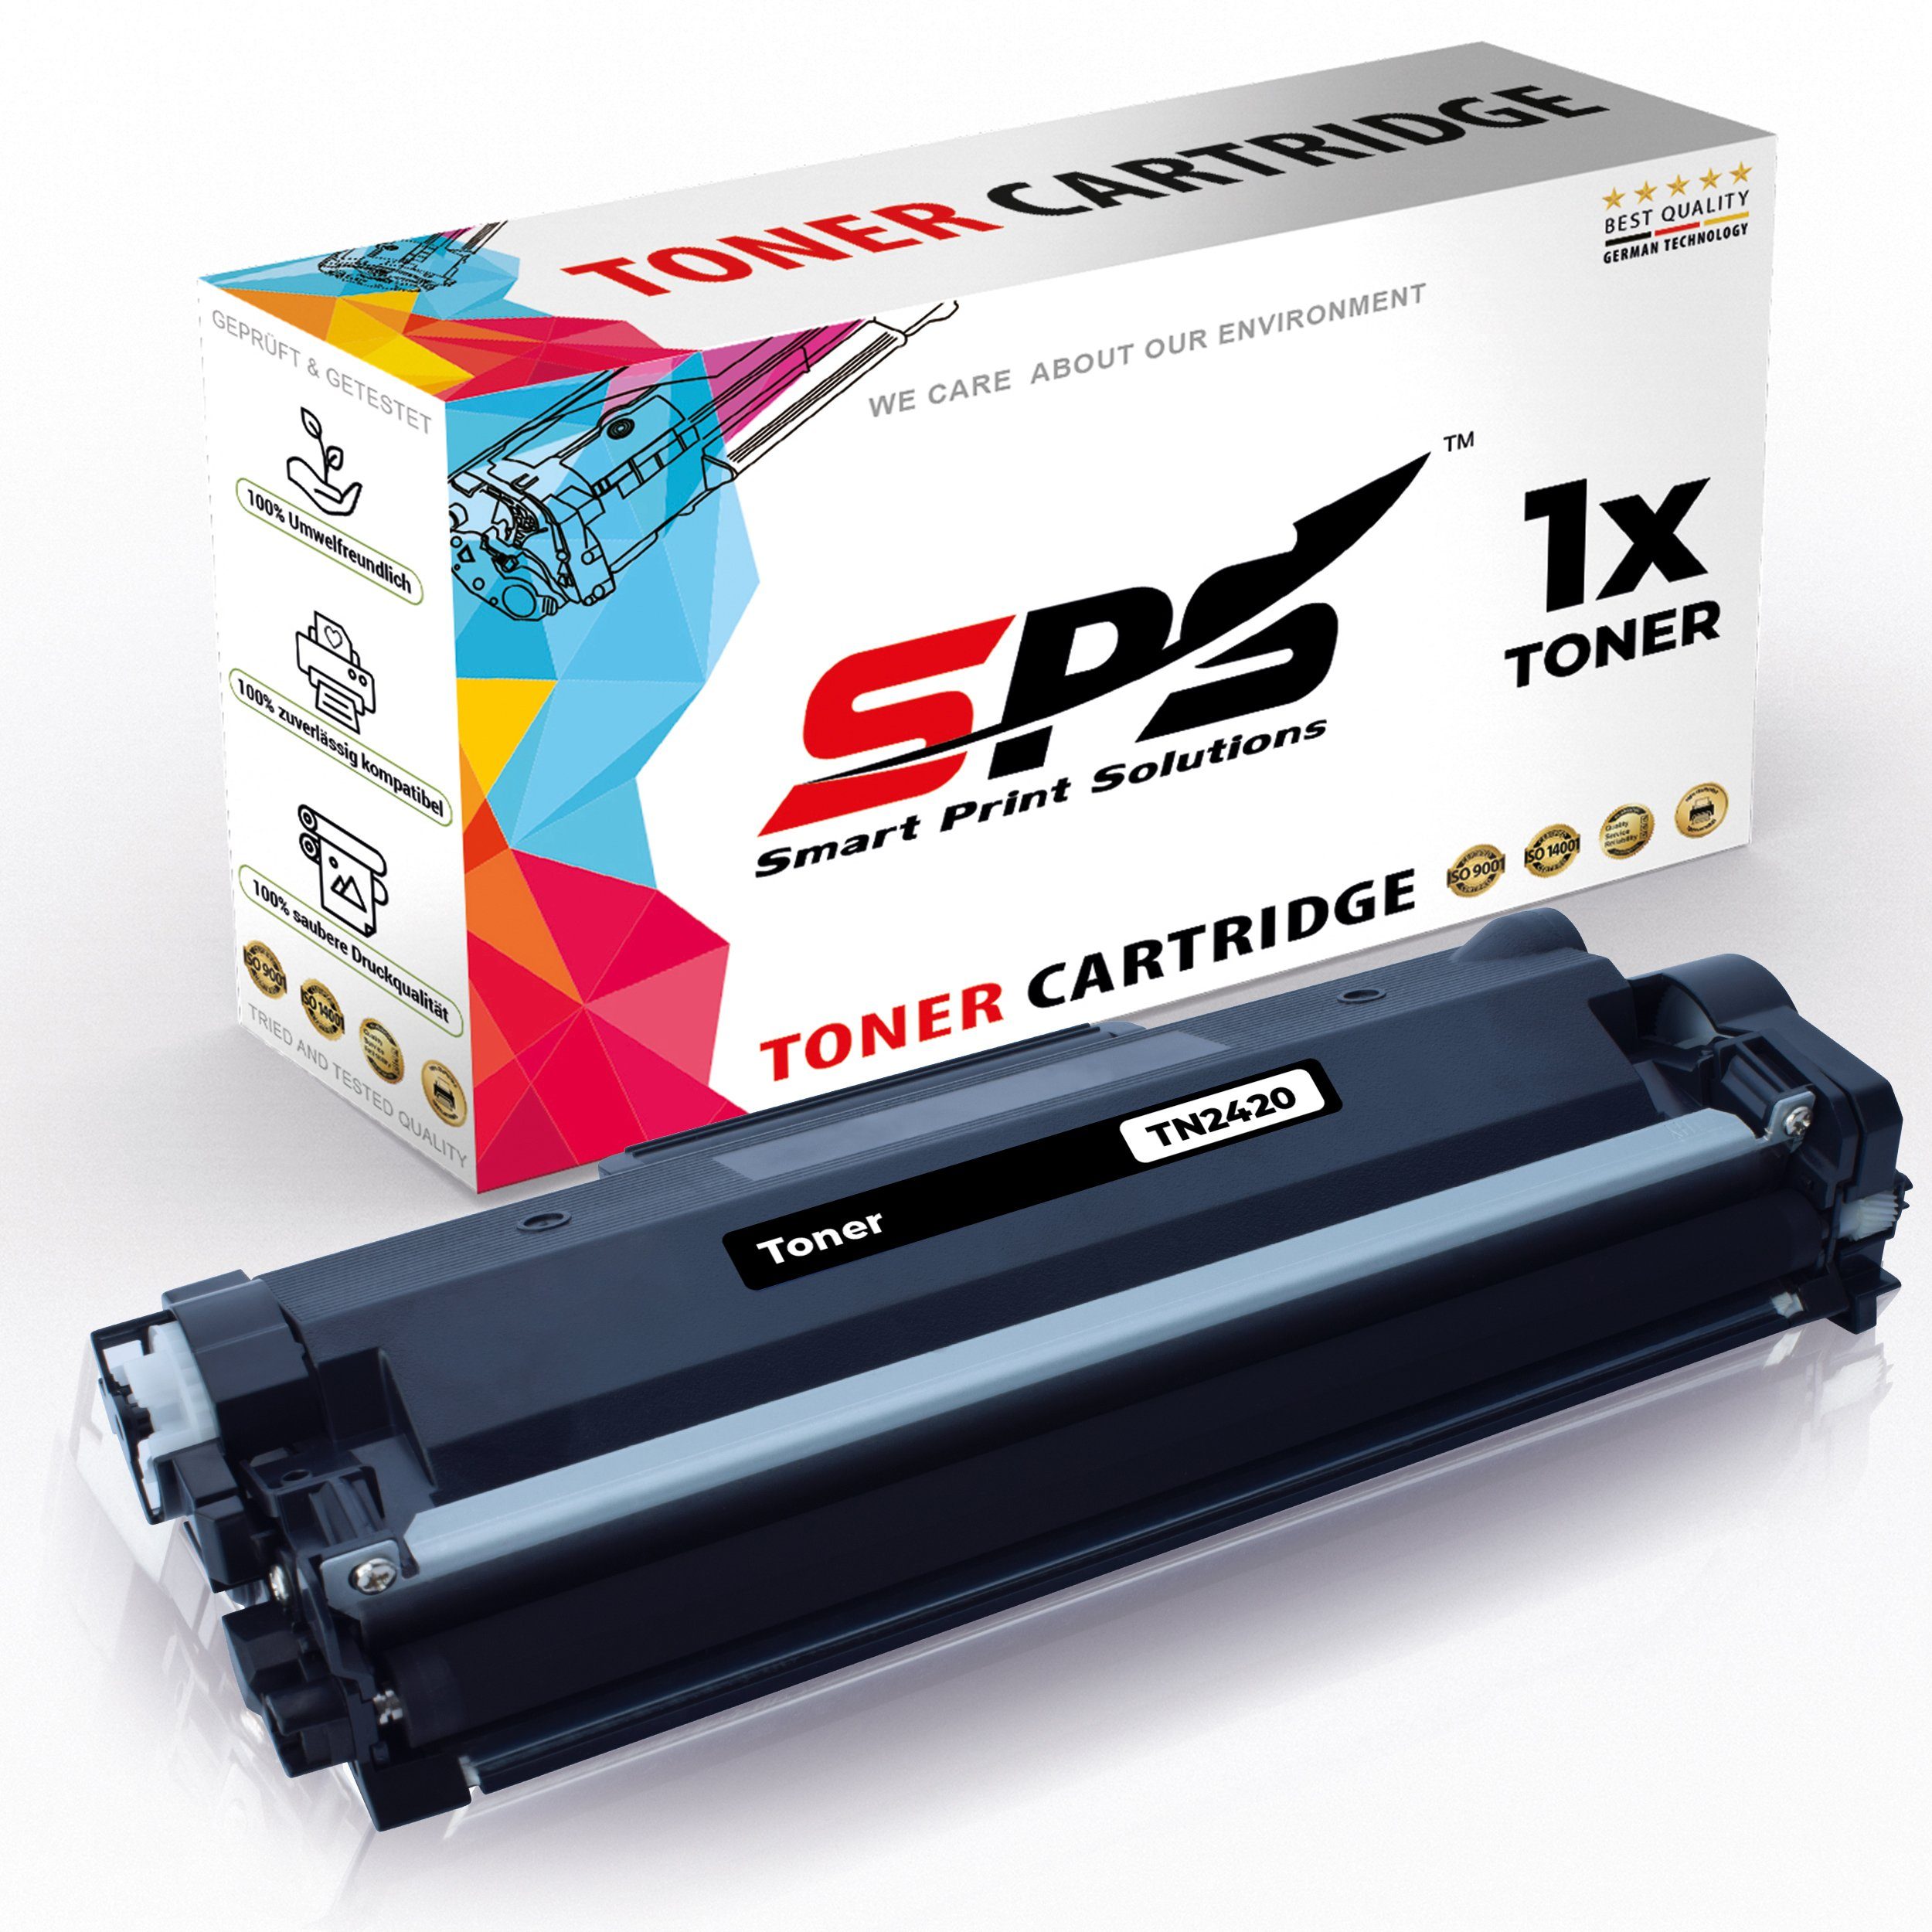 SPS Tonerkartusche Kompatibel Pack) für HL-L2370 TN-2420, Brother (1er